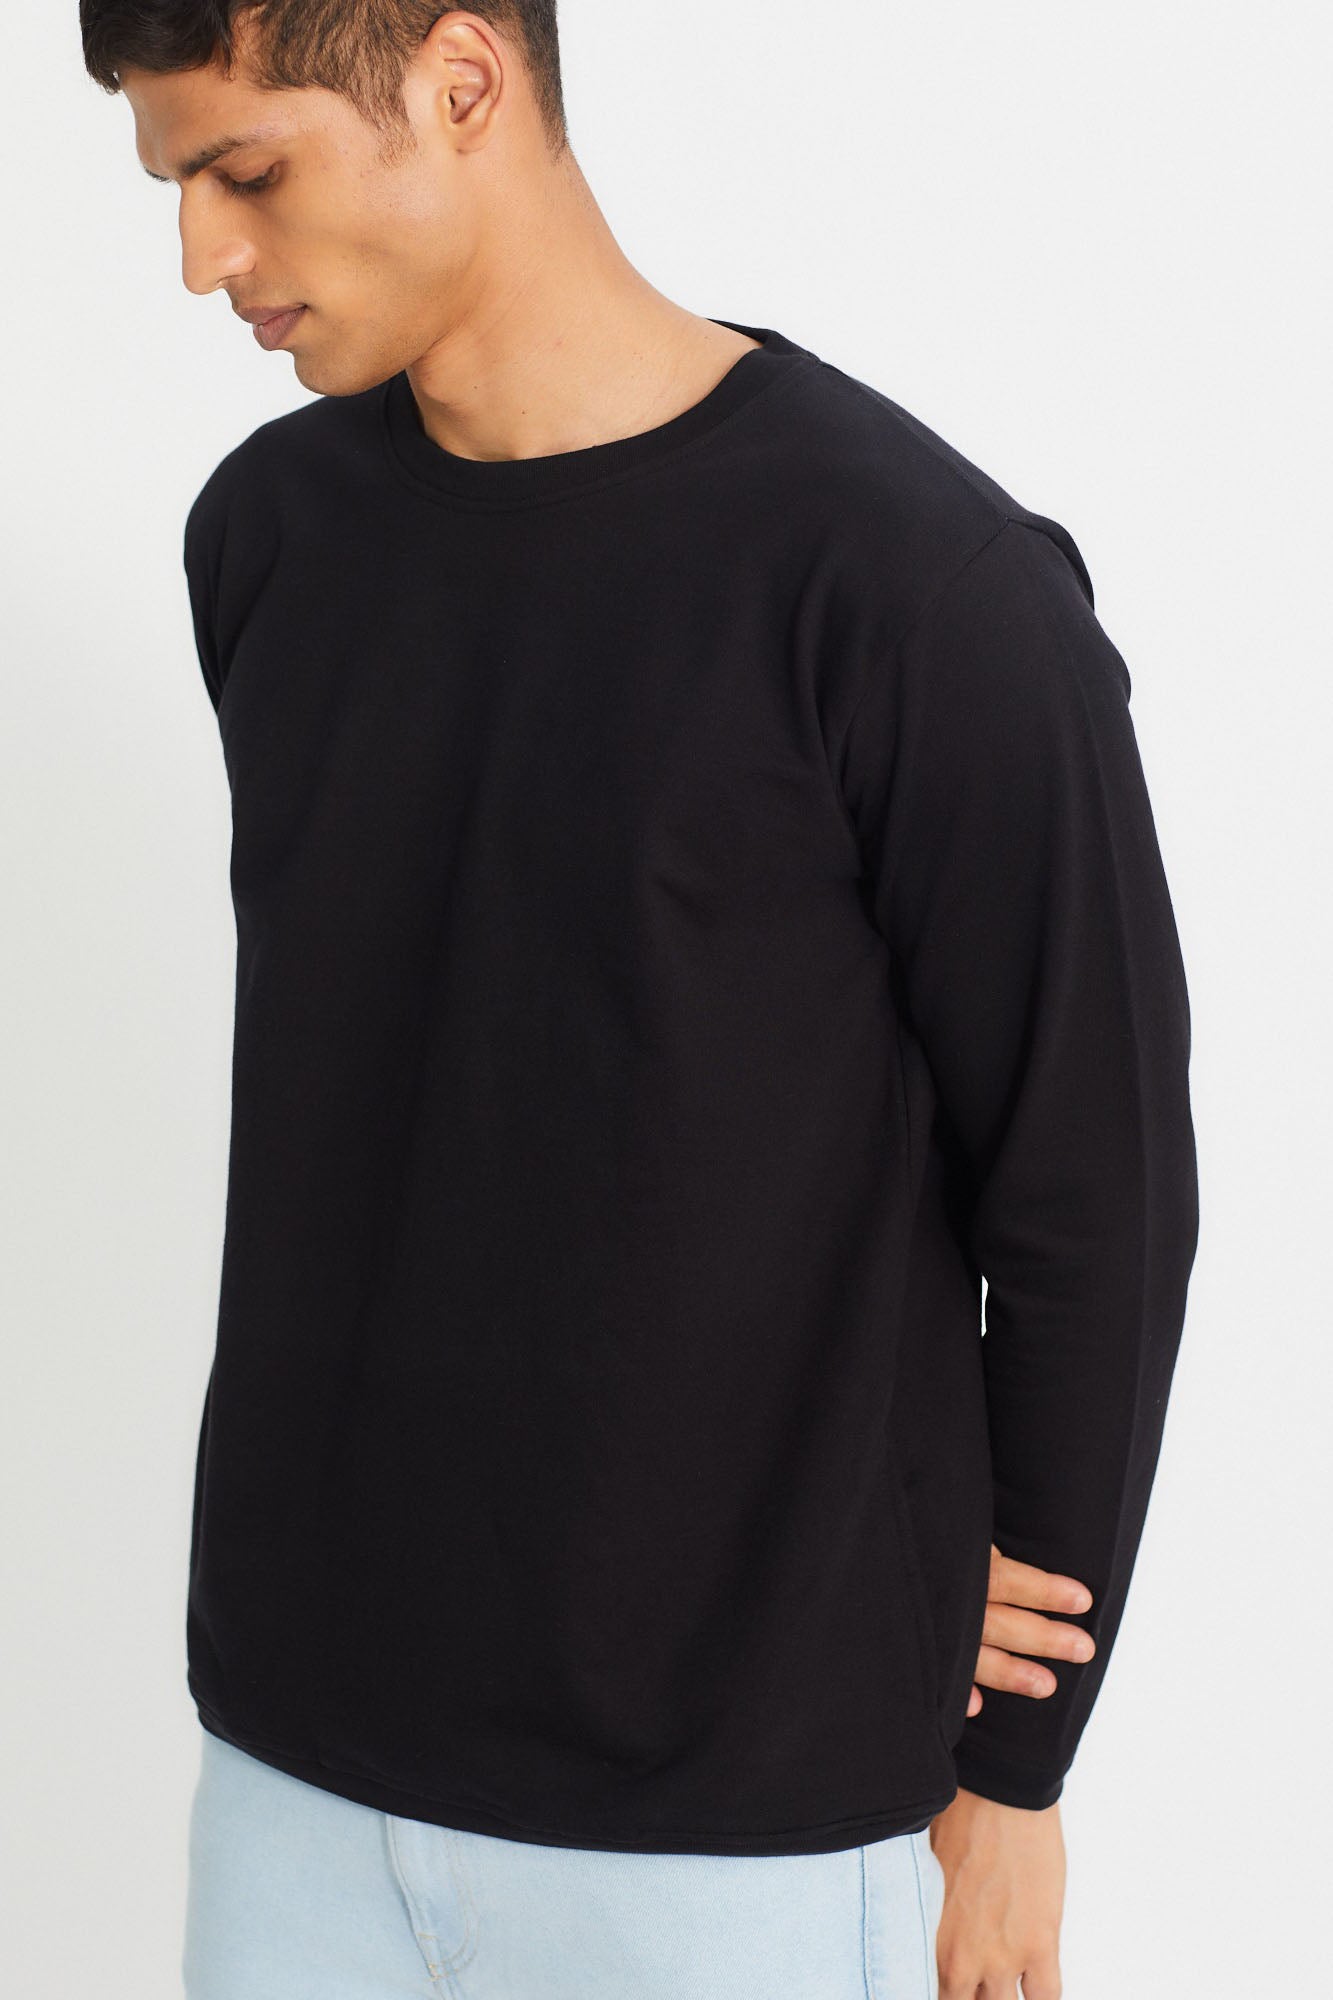 Sweatshirt for Men Carbon Black | Men Sweatshirt